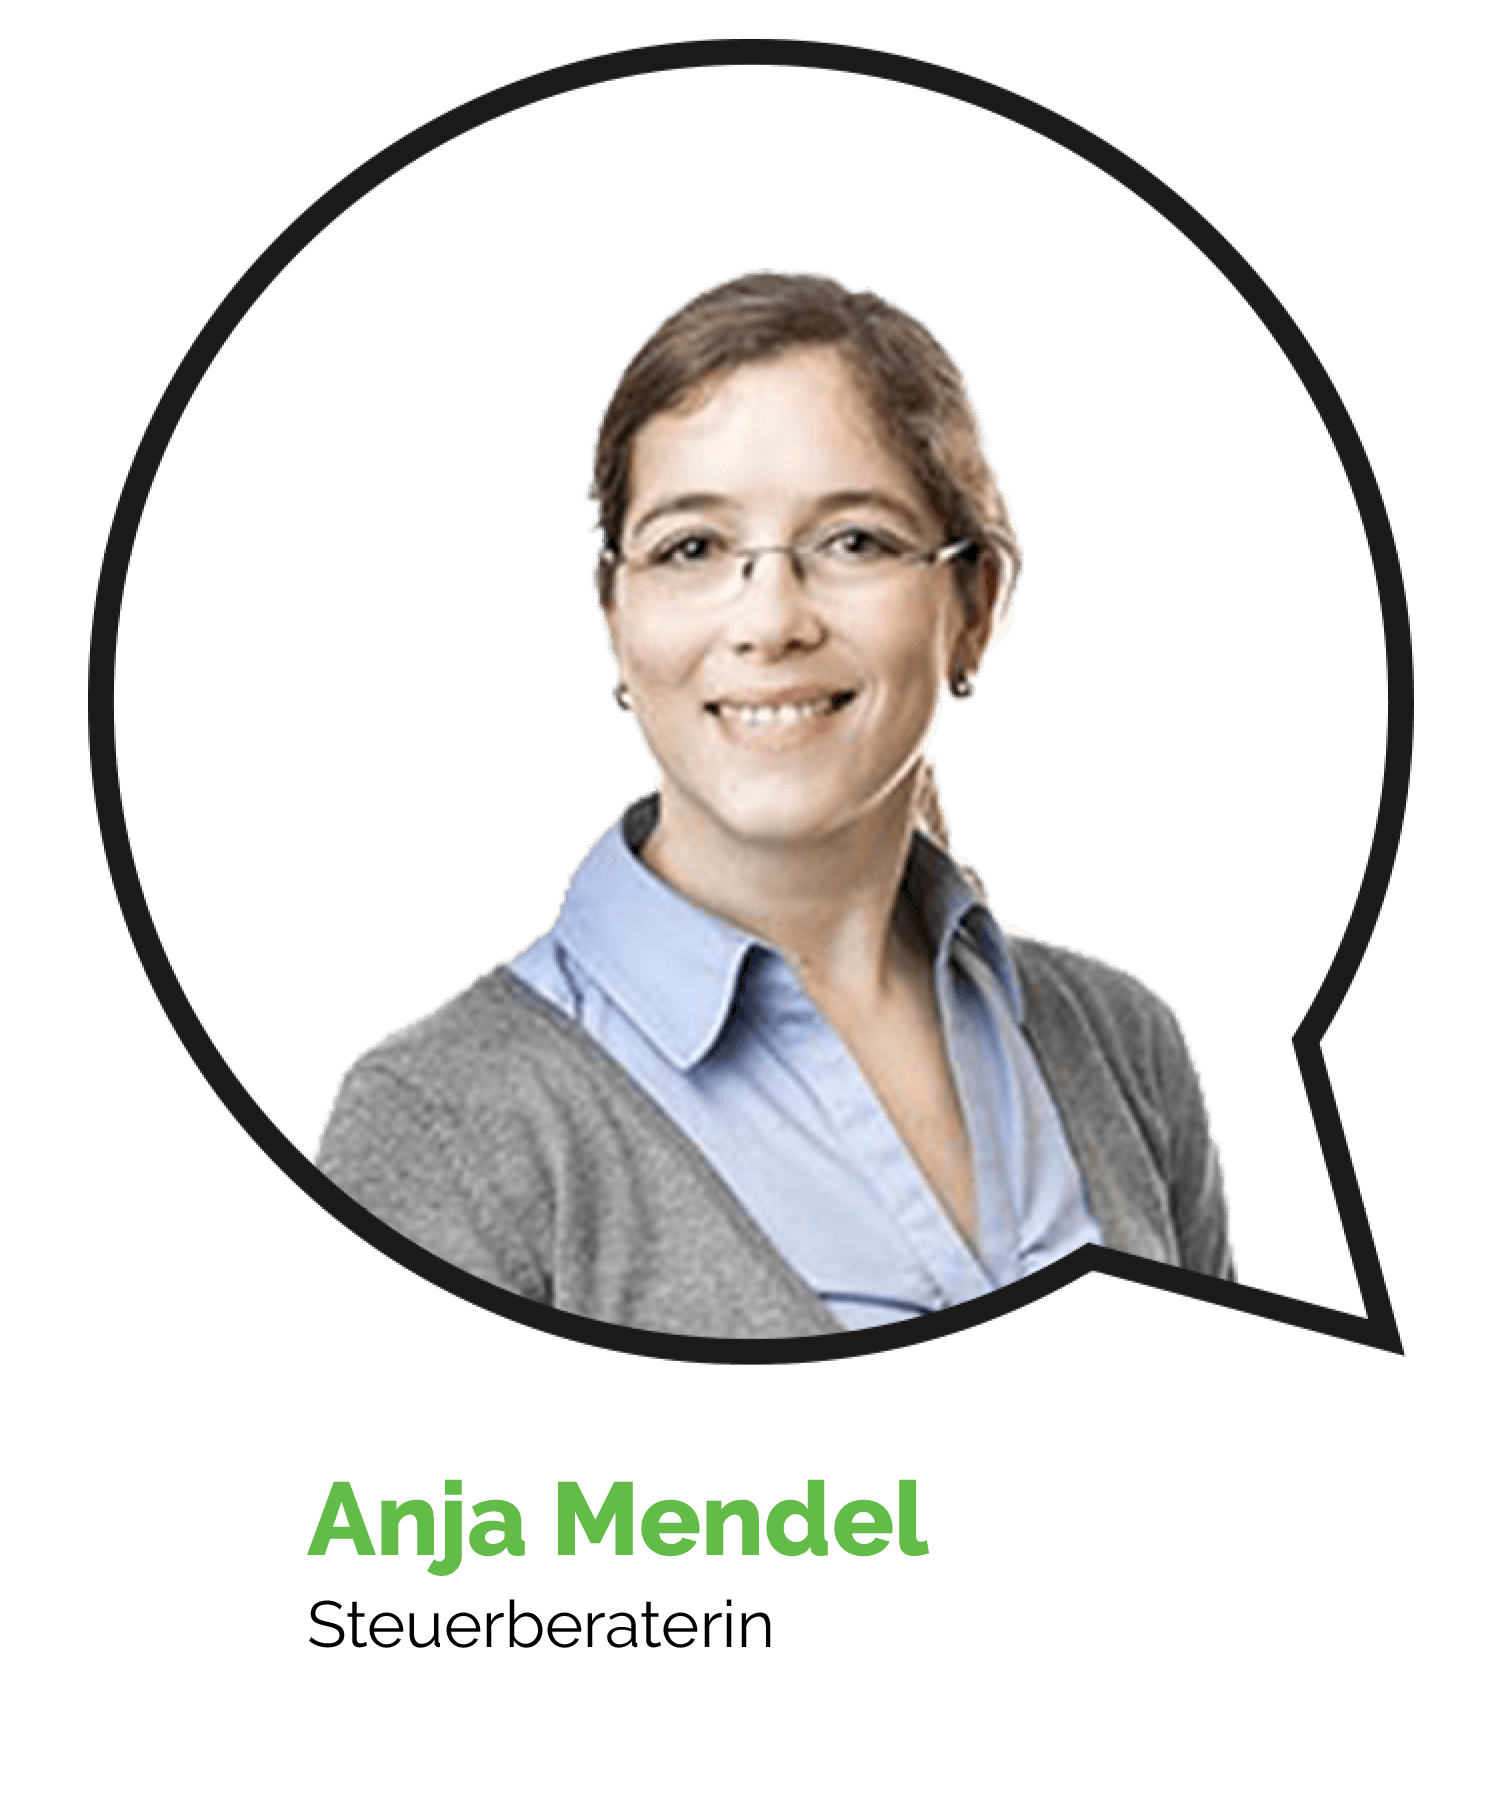 Anja Mendel